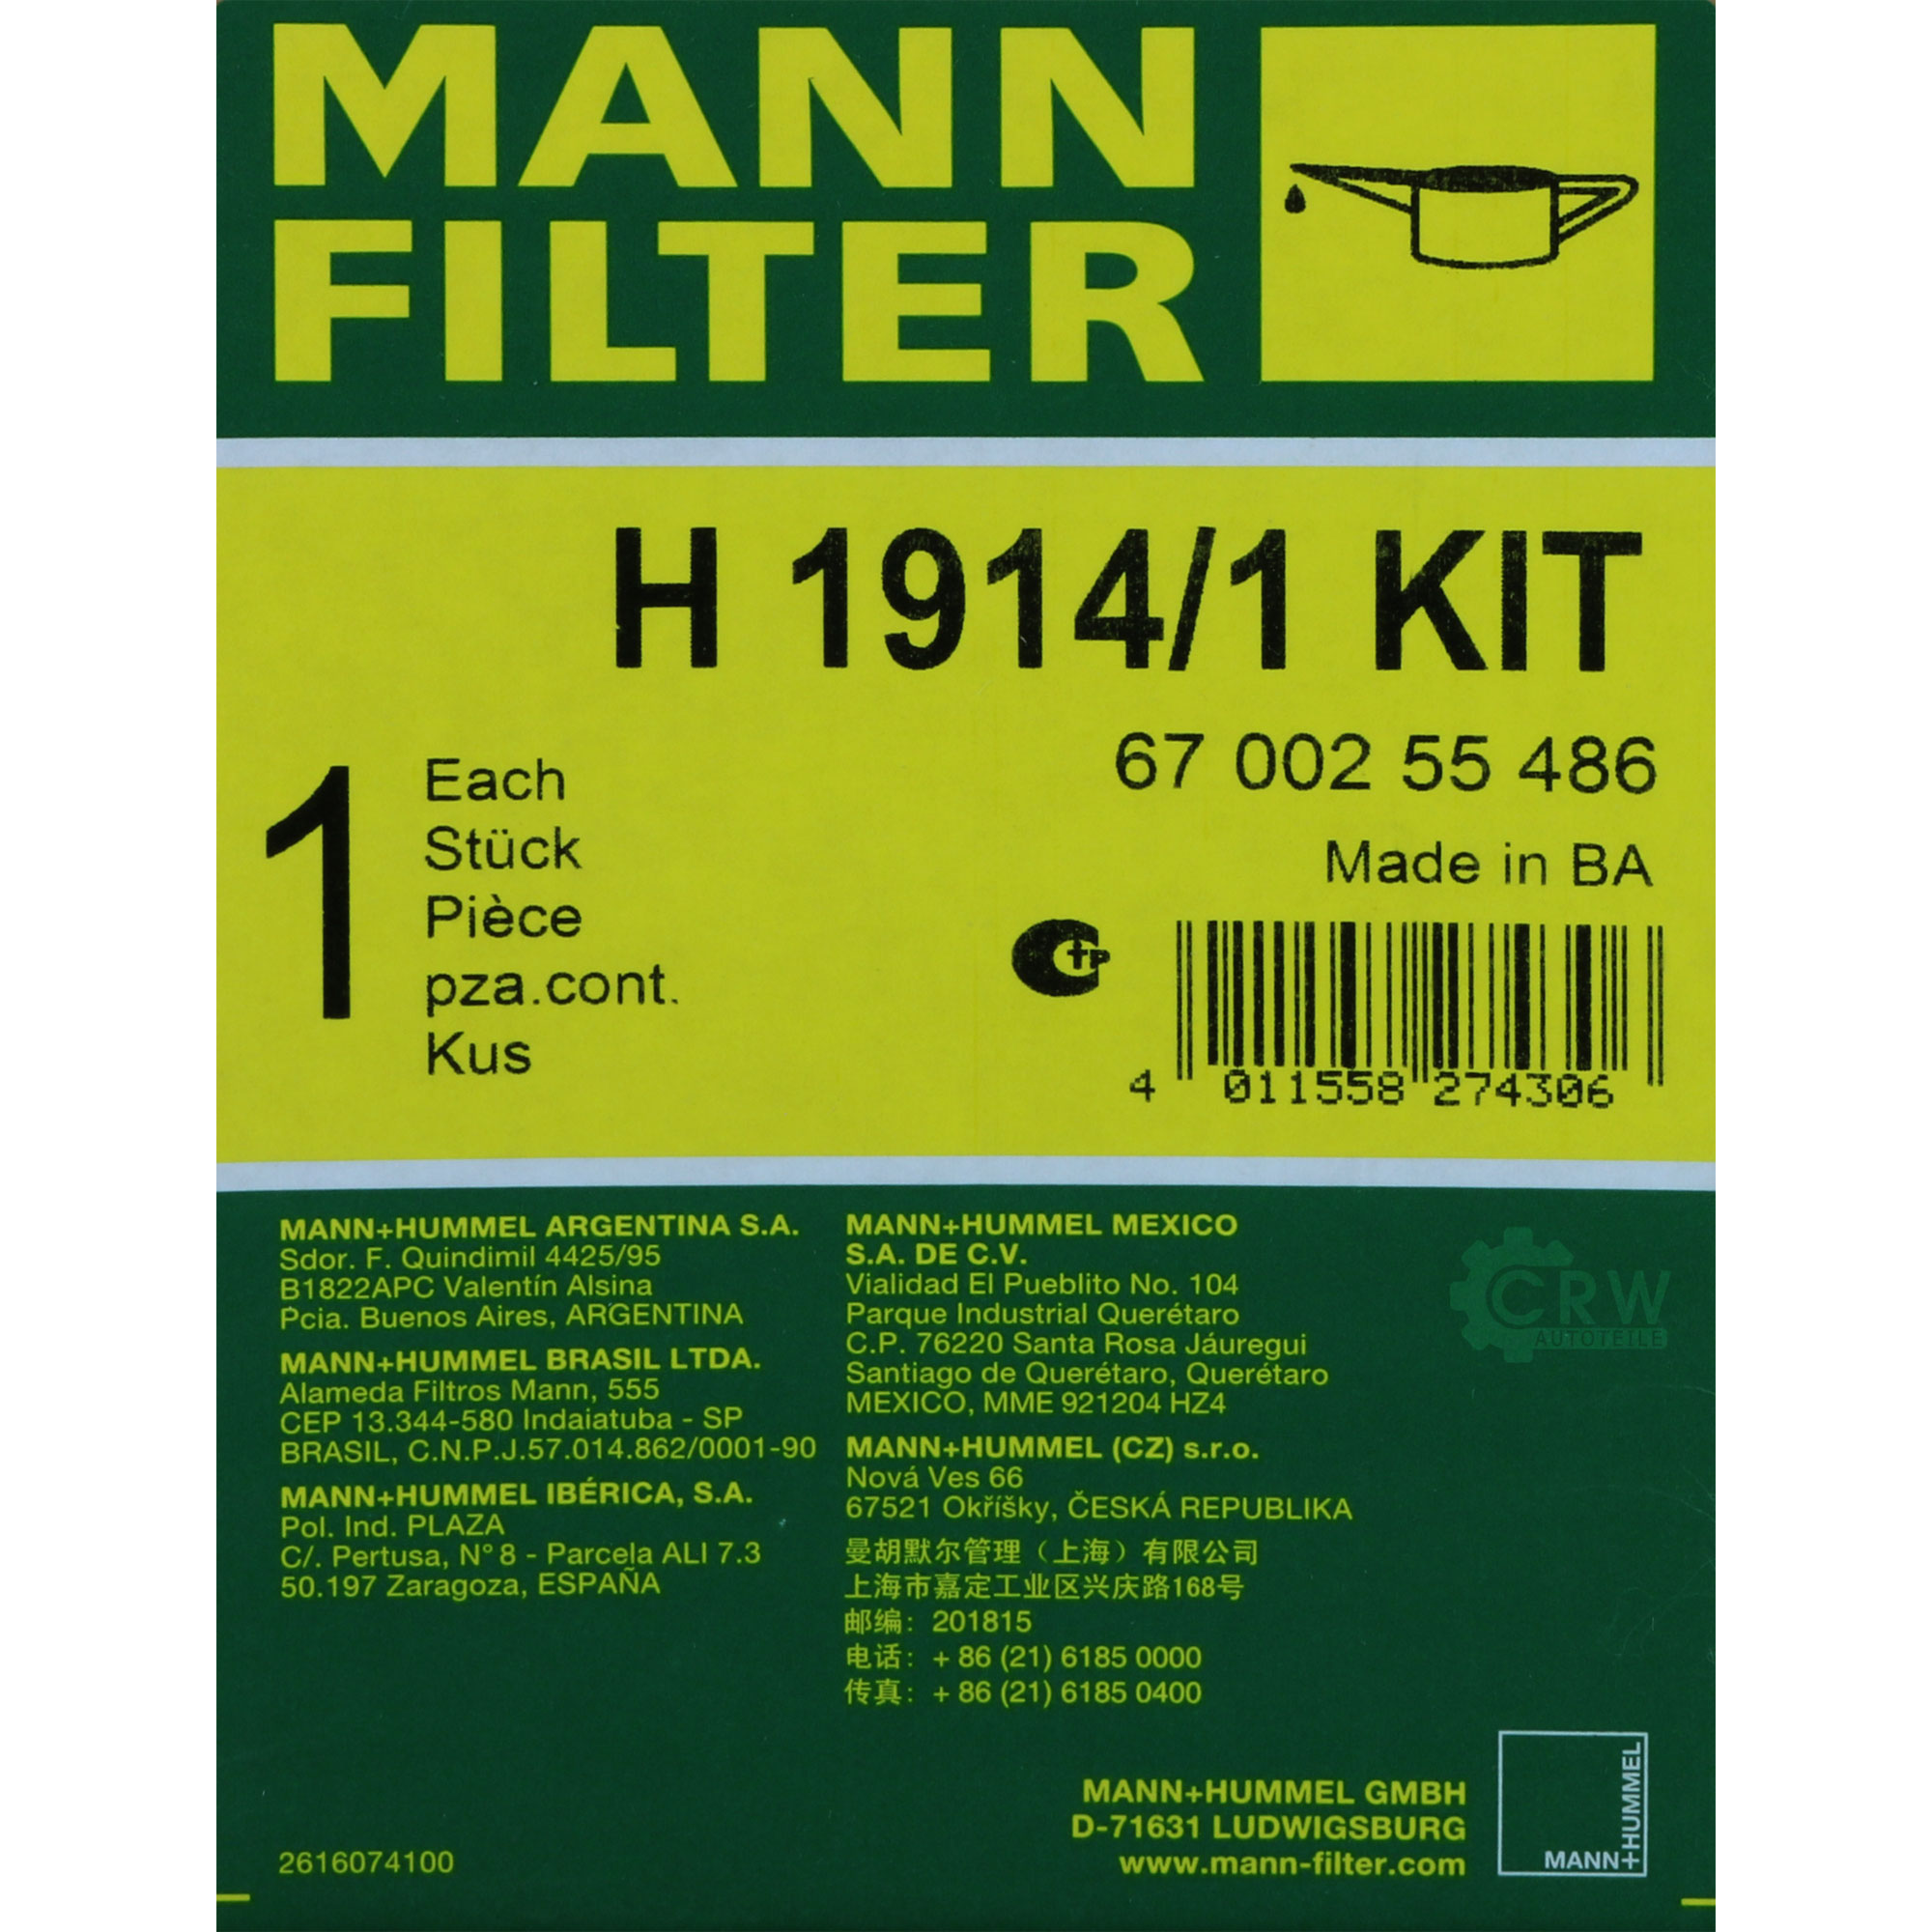 MANN-FILTER Getriebeölfilter für Automatikgetriebe H 1914/1 KIT